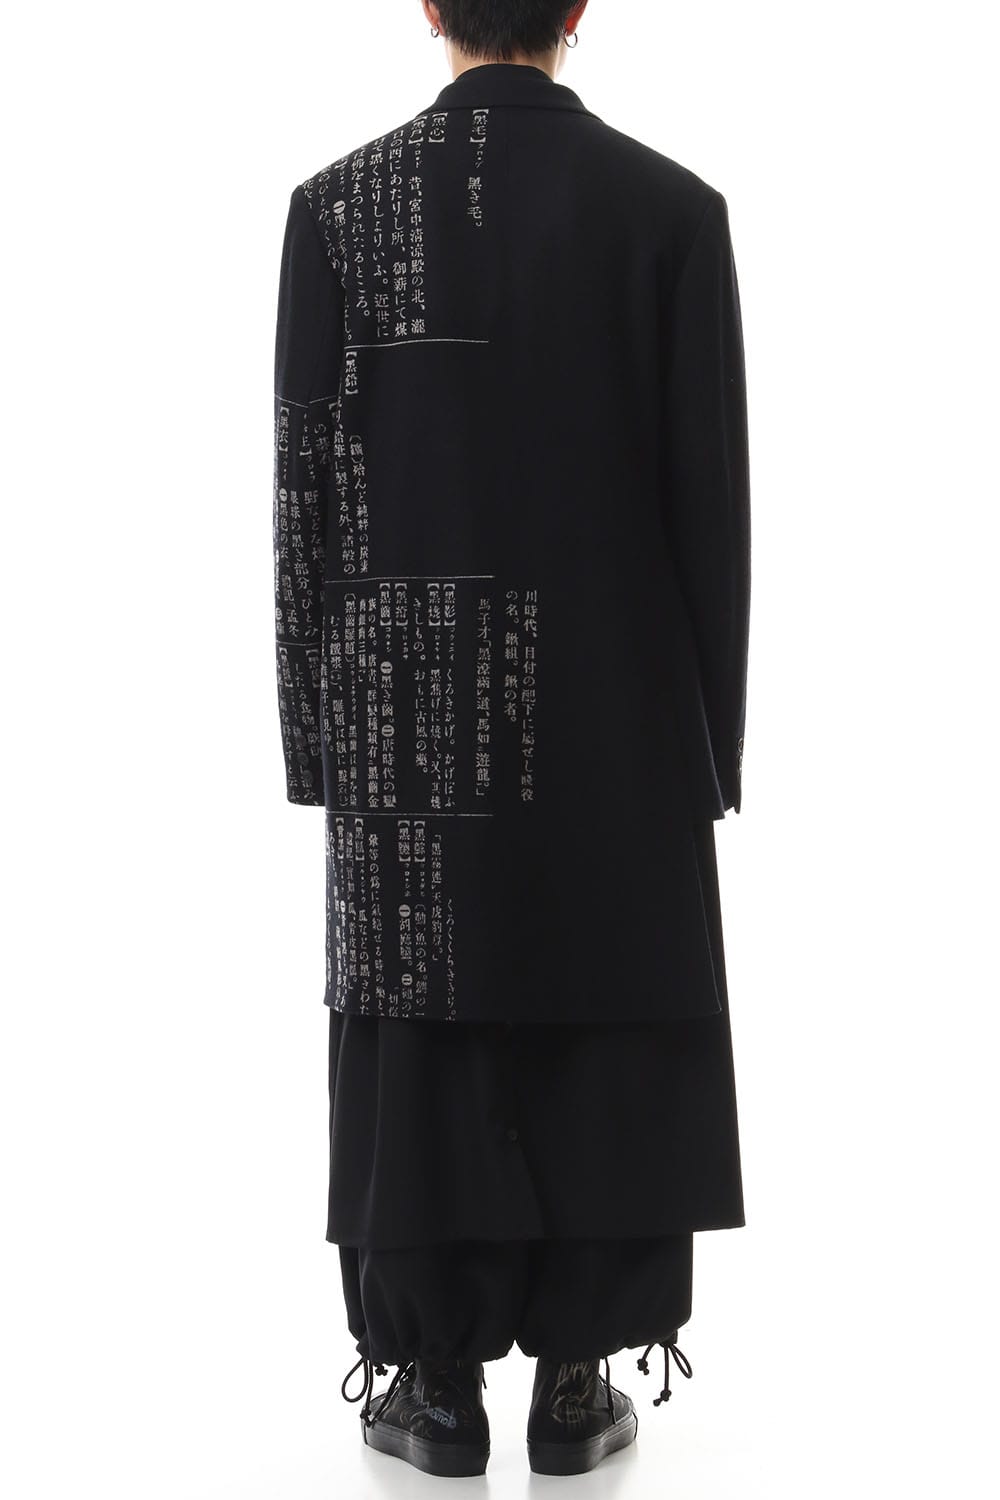 Yohji Yamamoto - Outerwear - Online Store - FASCINATE THE R OSAKA